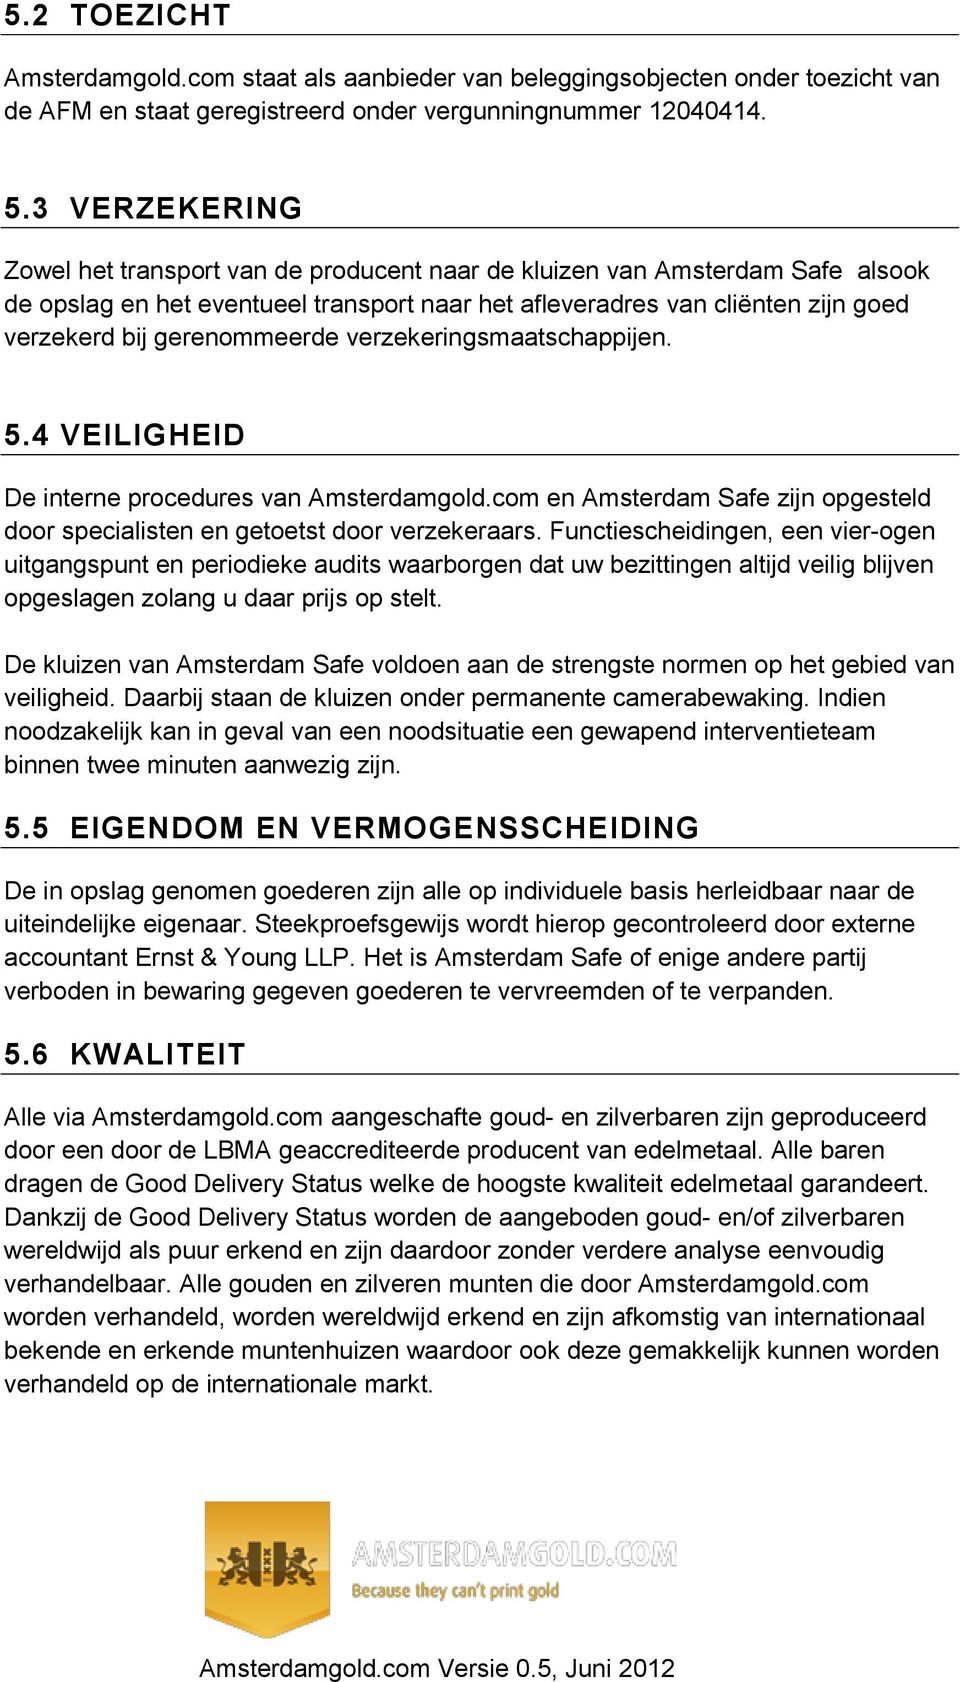 gerenommeerde verzekeringsmaatschappijen. 5.4 VEILIGHEID De interne procedures van Amsterdamgold.com en Amsterdam Safe zijn opgesteld door specialisten en getoetst door verzekeraars.